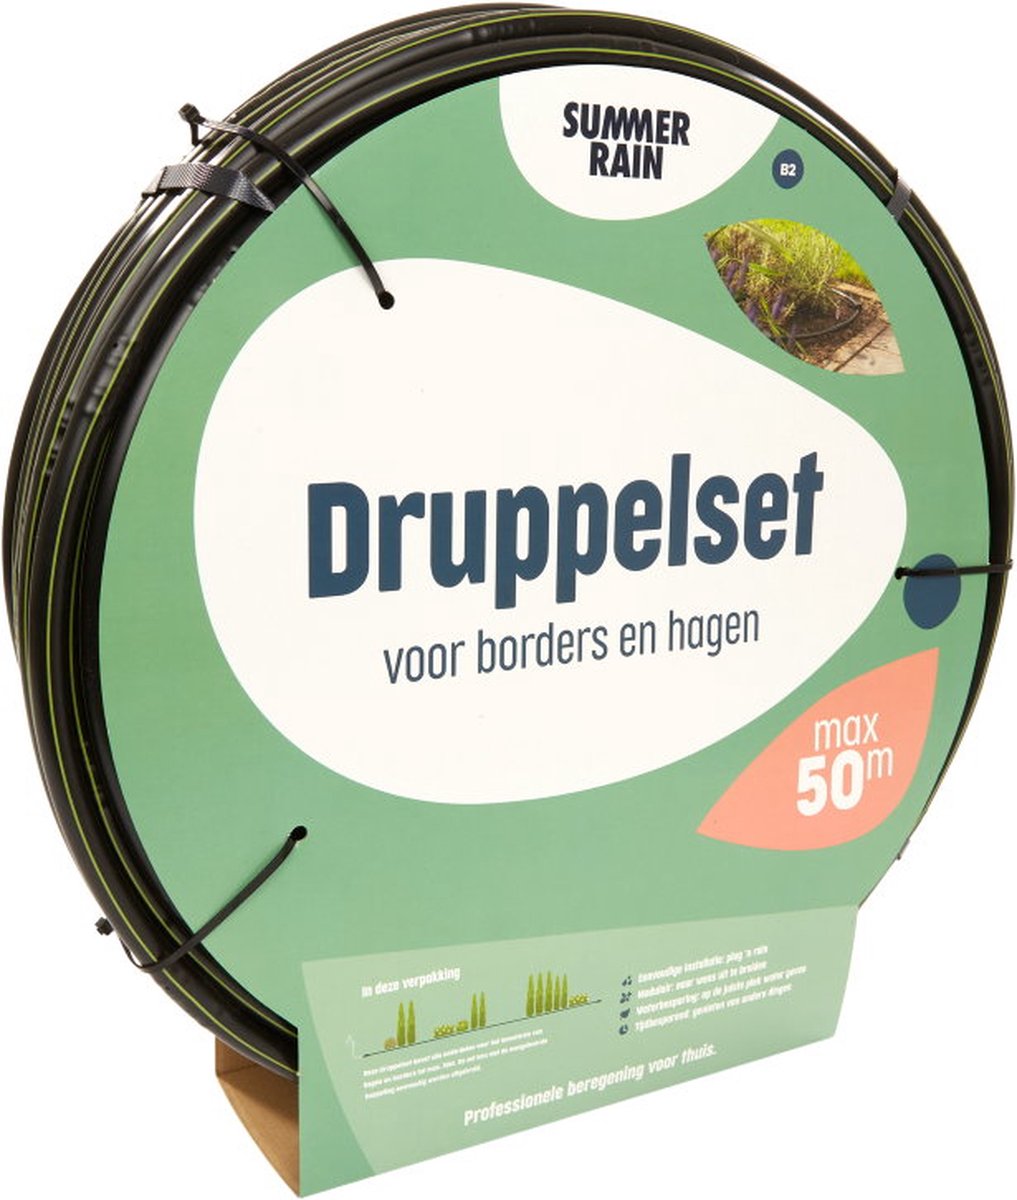 SummerRain druppelsysteem - druppelset voor borders en hagen - druppelslang 50 m1 - professionele beregening voor thuis